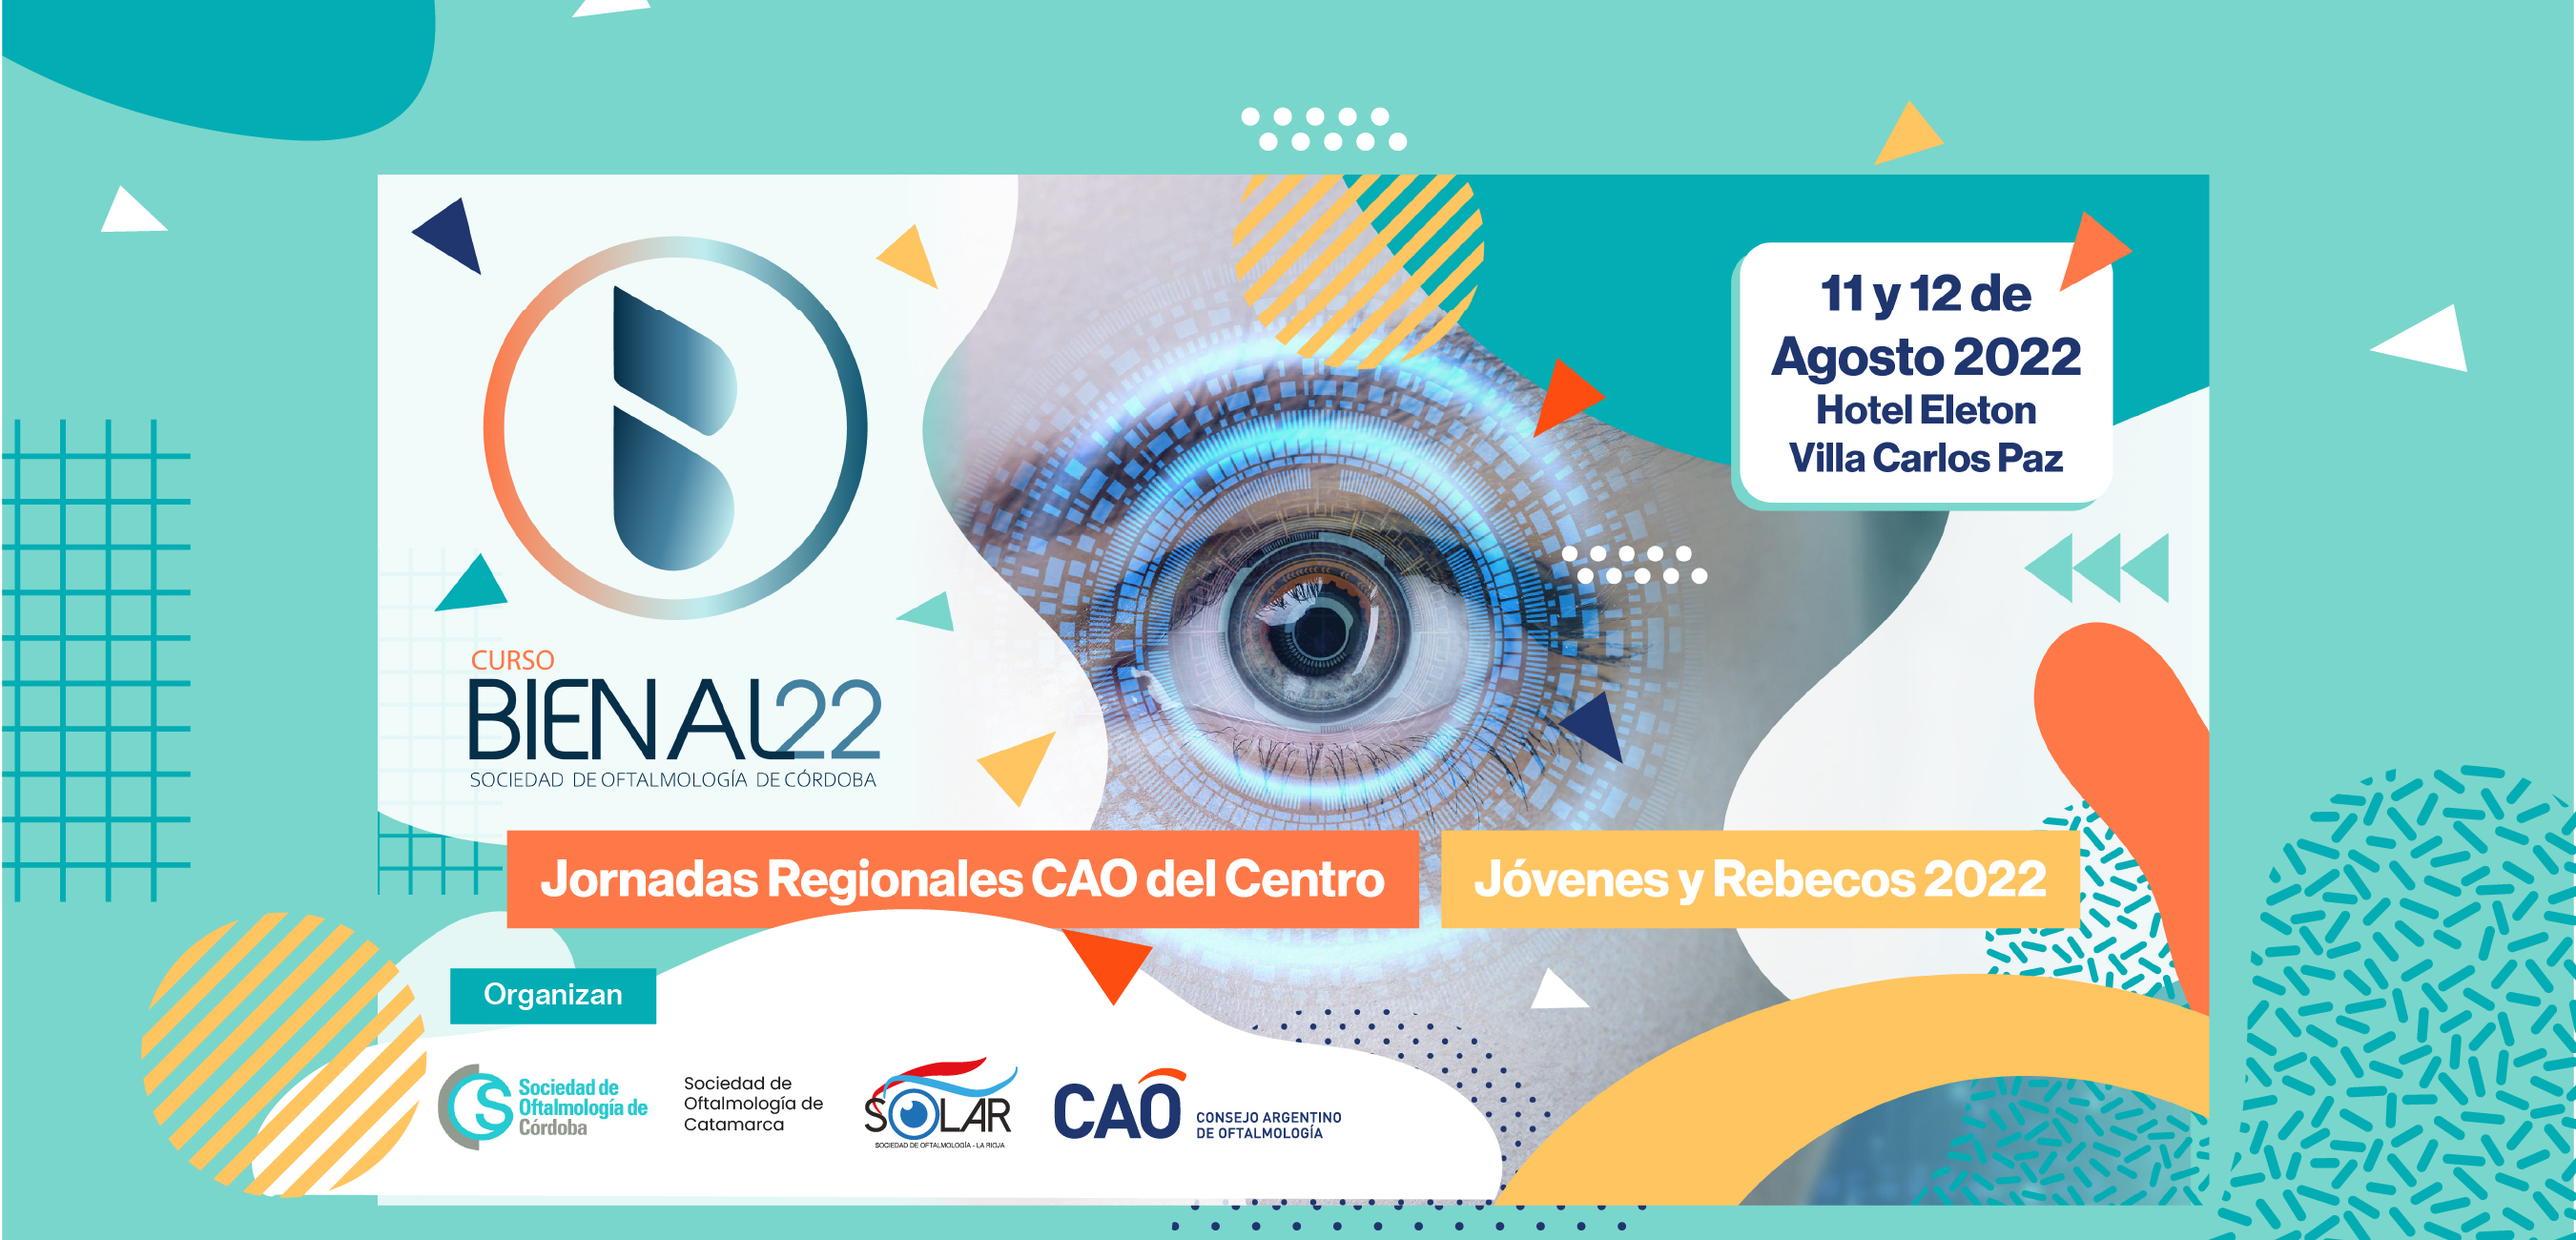 Curso Bienal de la SOC - Jornadas Regionales CAO Centro - Jornadas de Jóvenes y Rebecos 2022